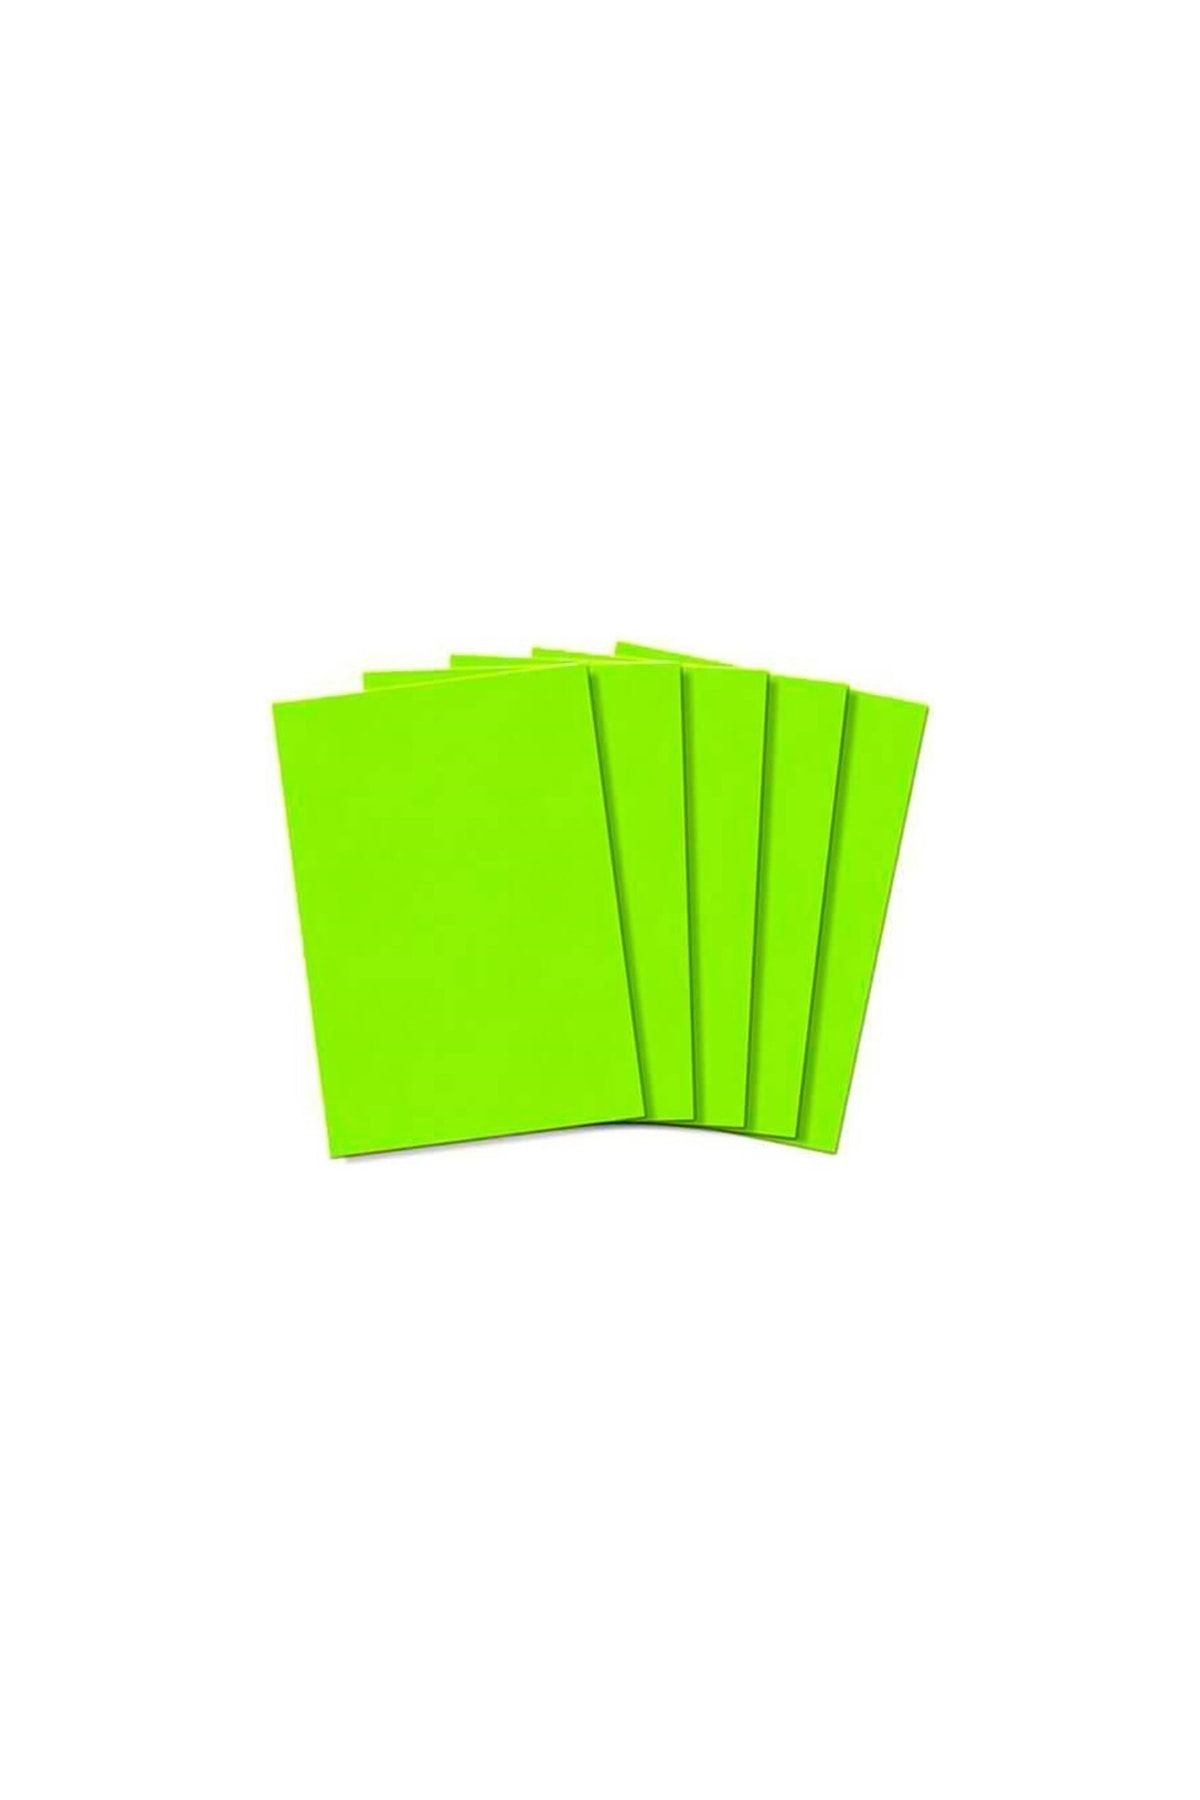 Keskin Color Floresan Elişi Kağıdı 100 Adet Yeşil Fosforlu